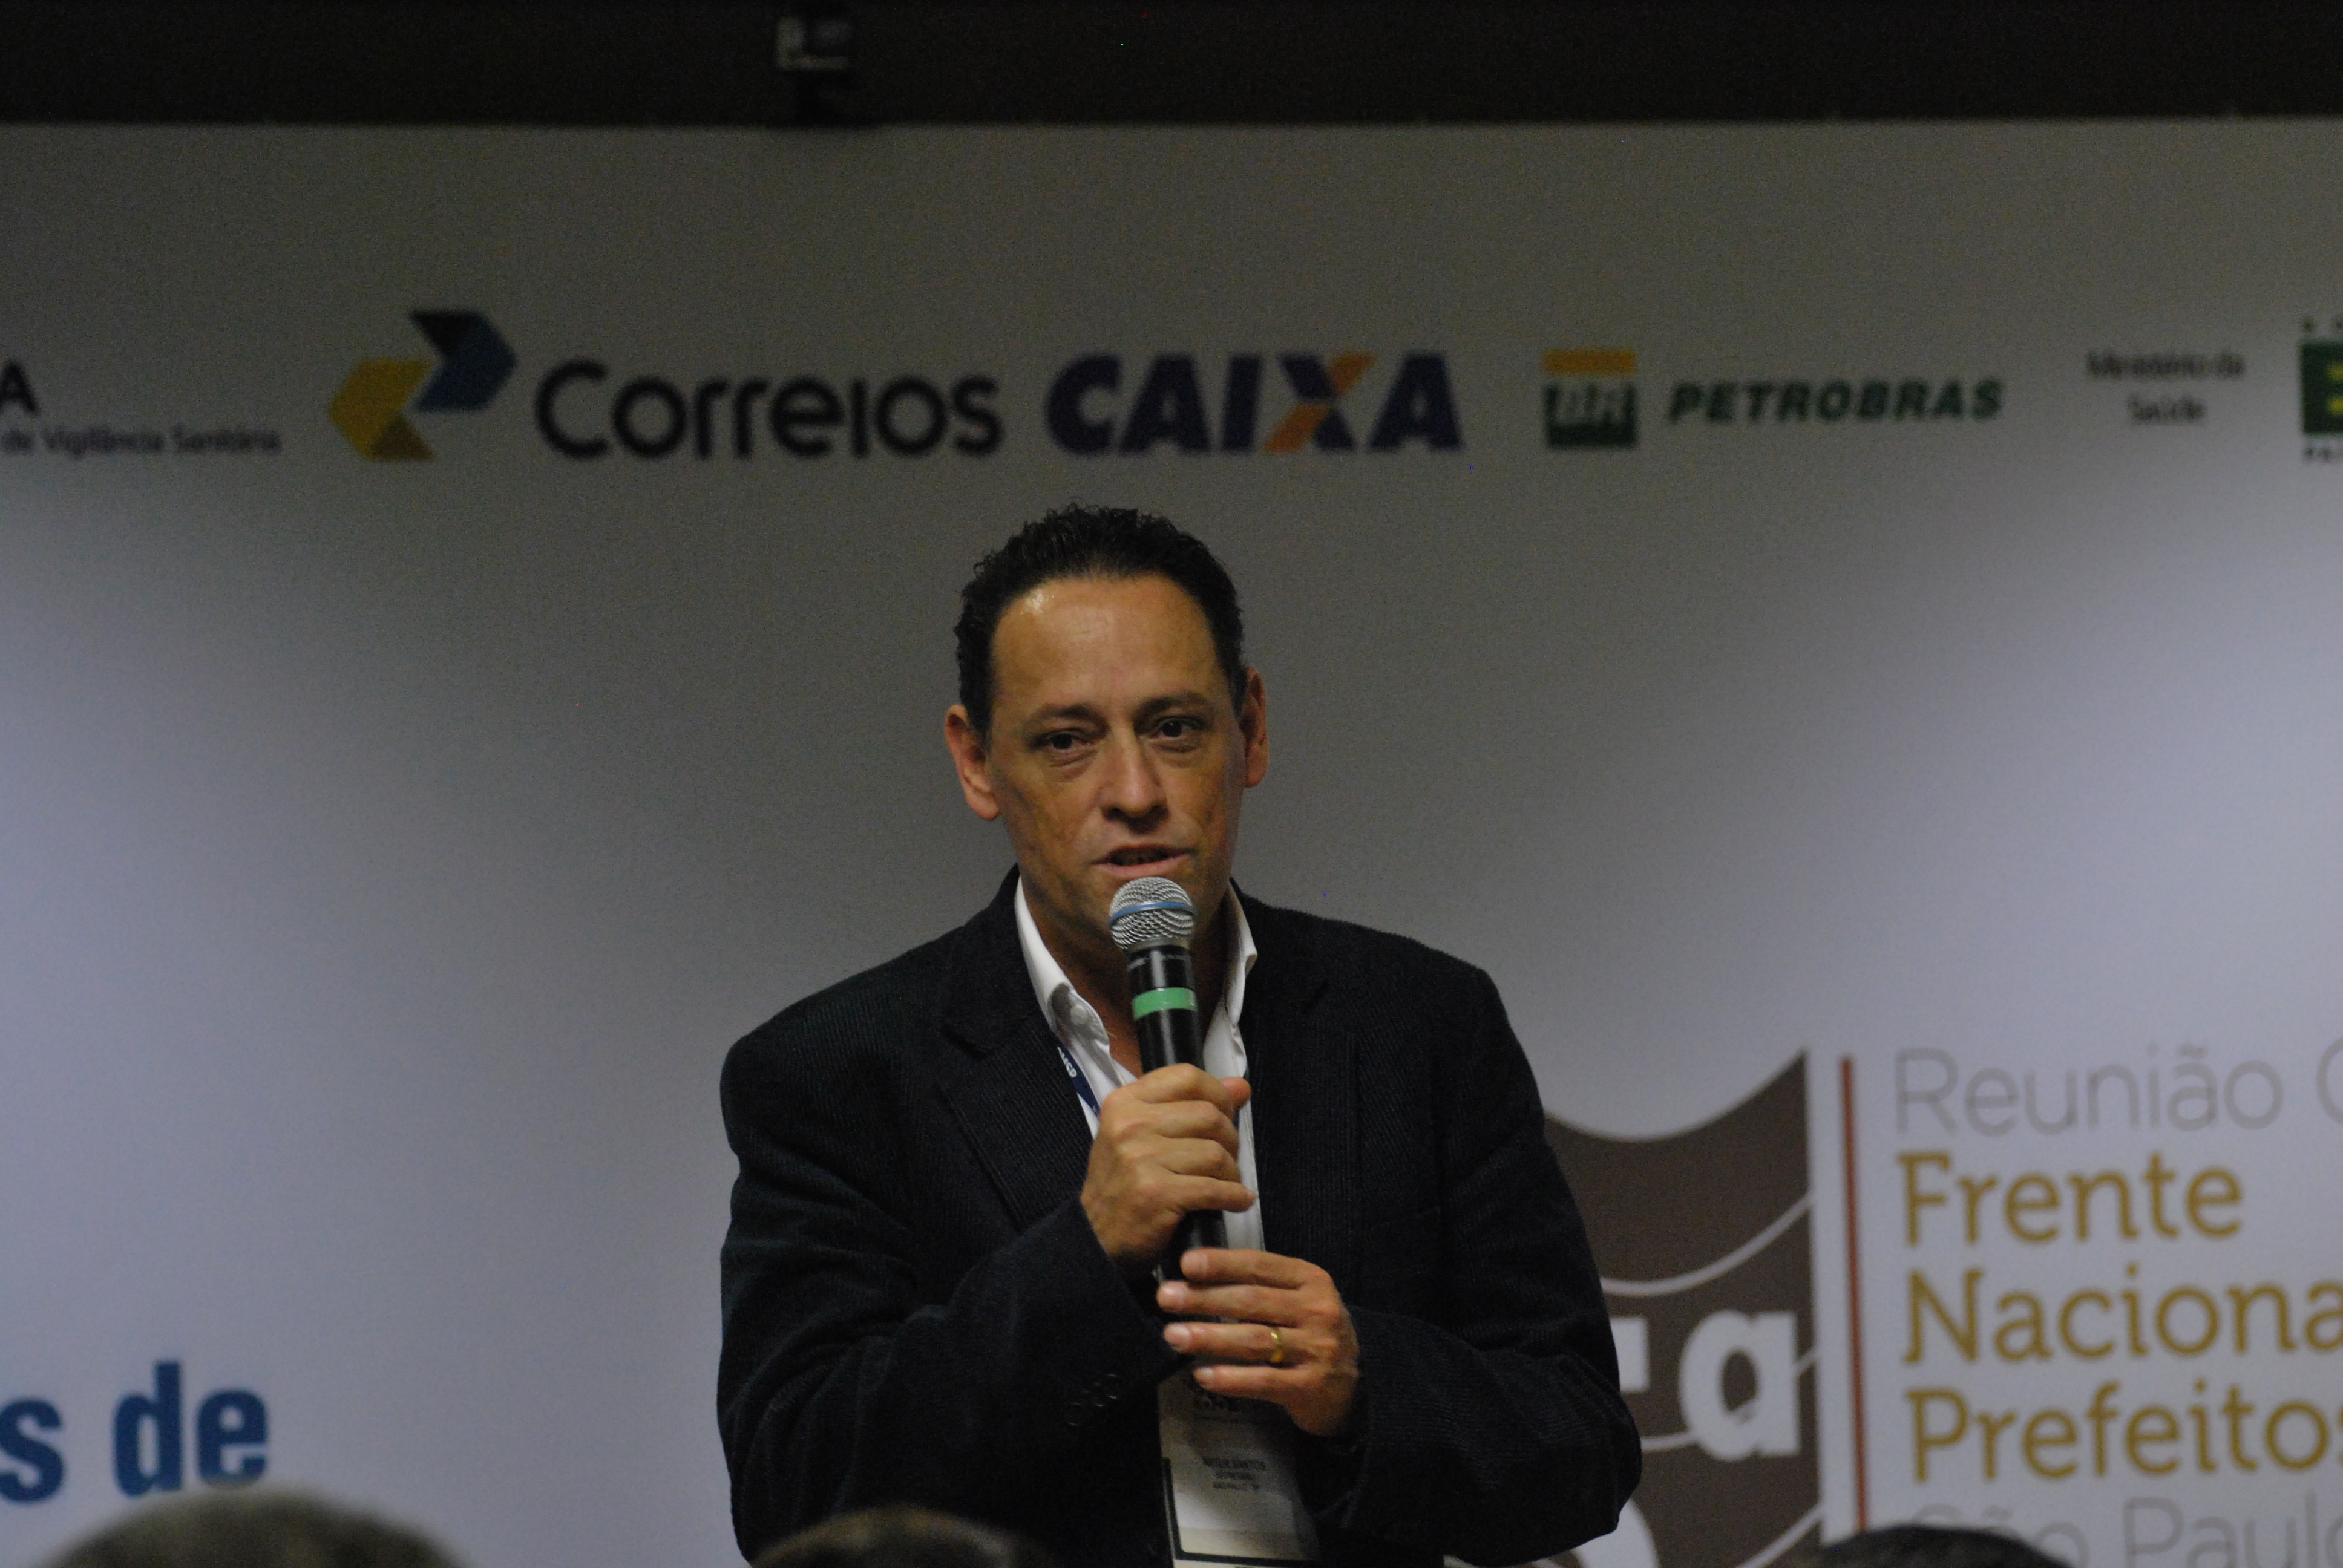 O Secretário Artur Henrique representou o município durante o evento